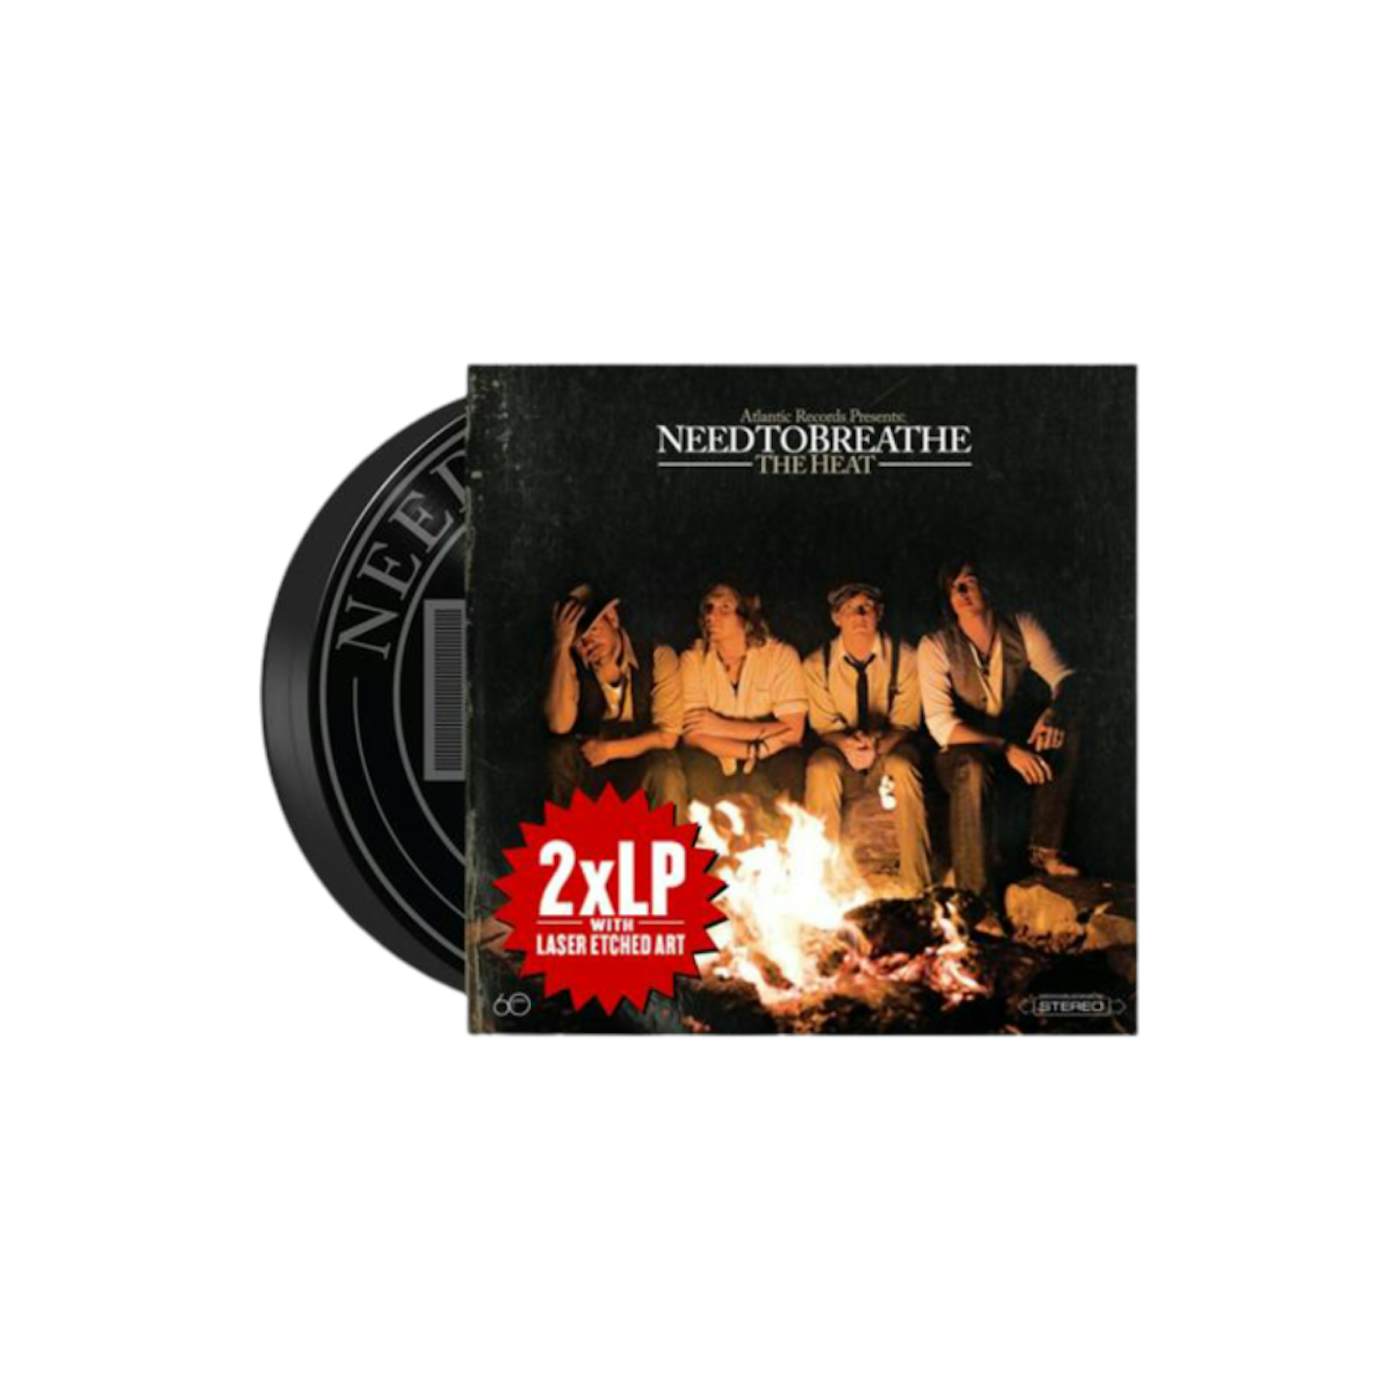 NEEDTOBREATHE The Heat - 2xLP Vinyl